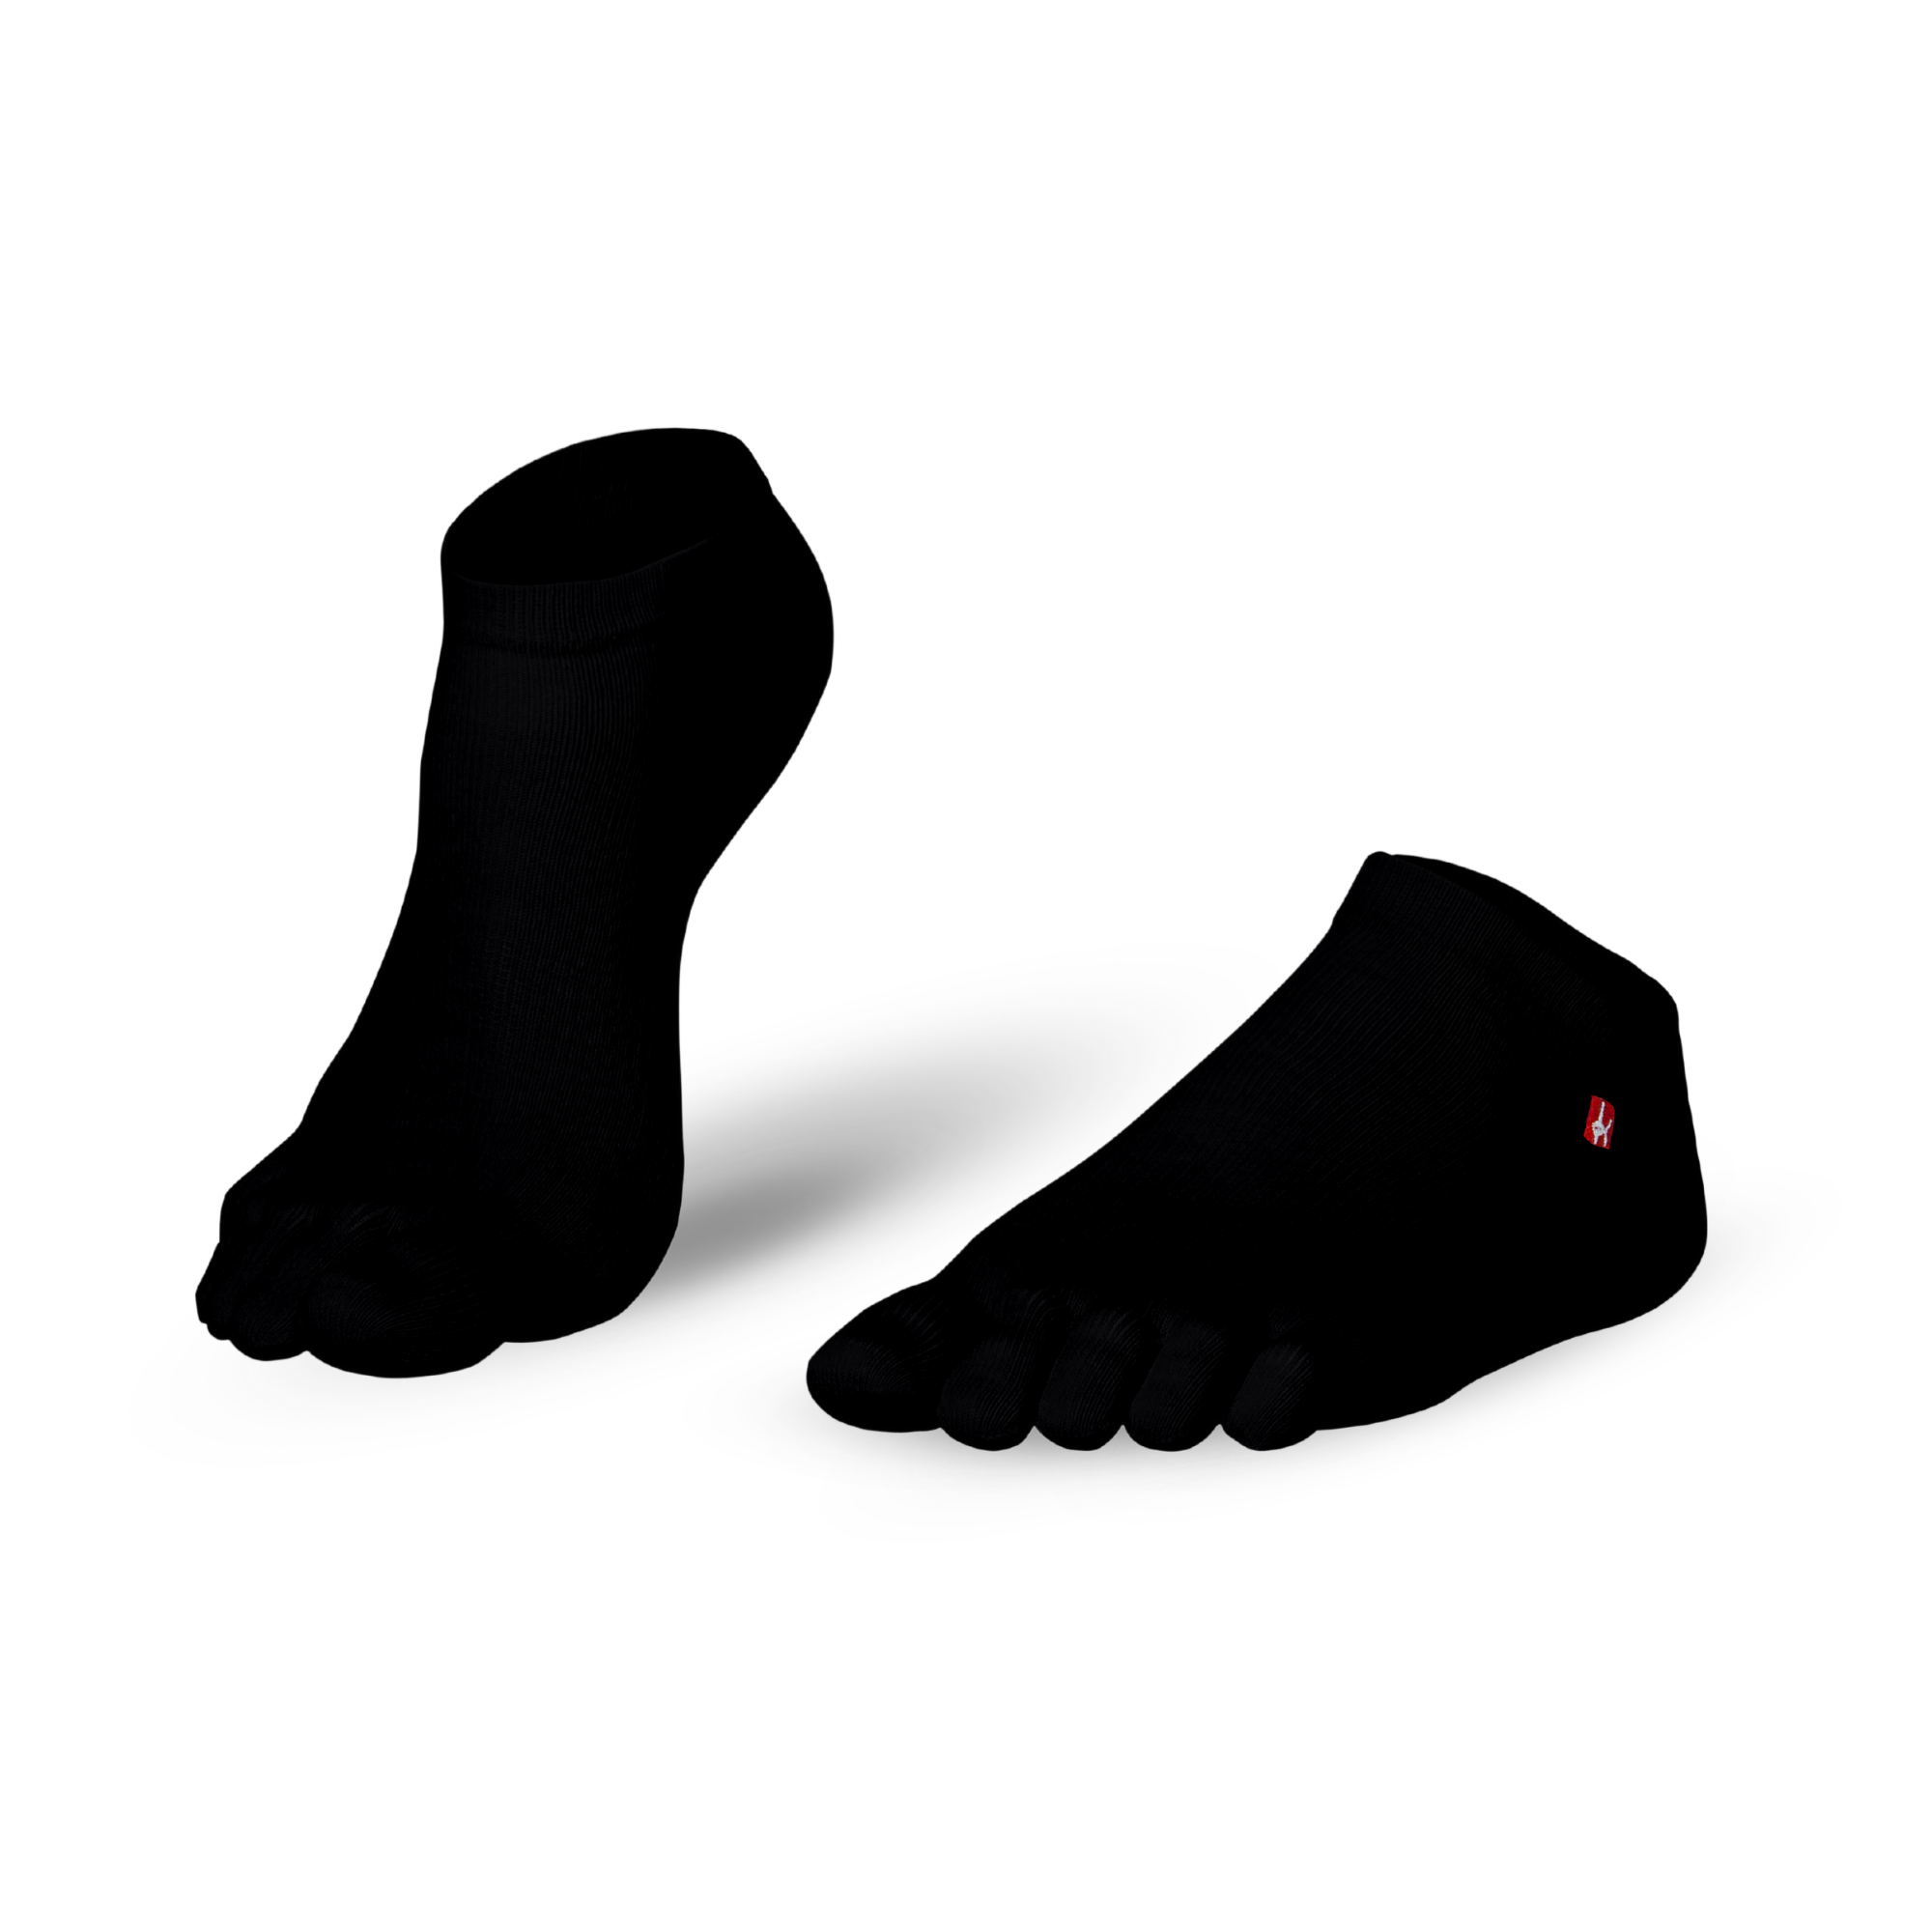 Knitido Track and Trail Ultralite toe socks Midi in black